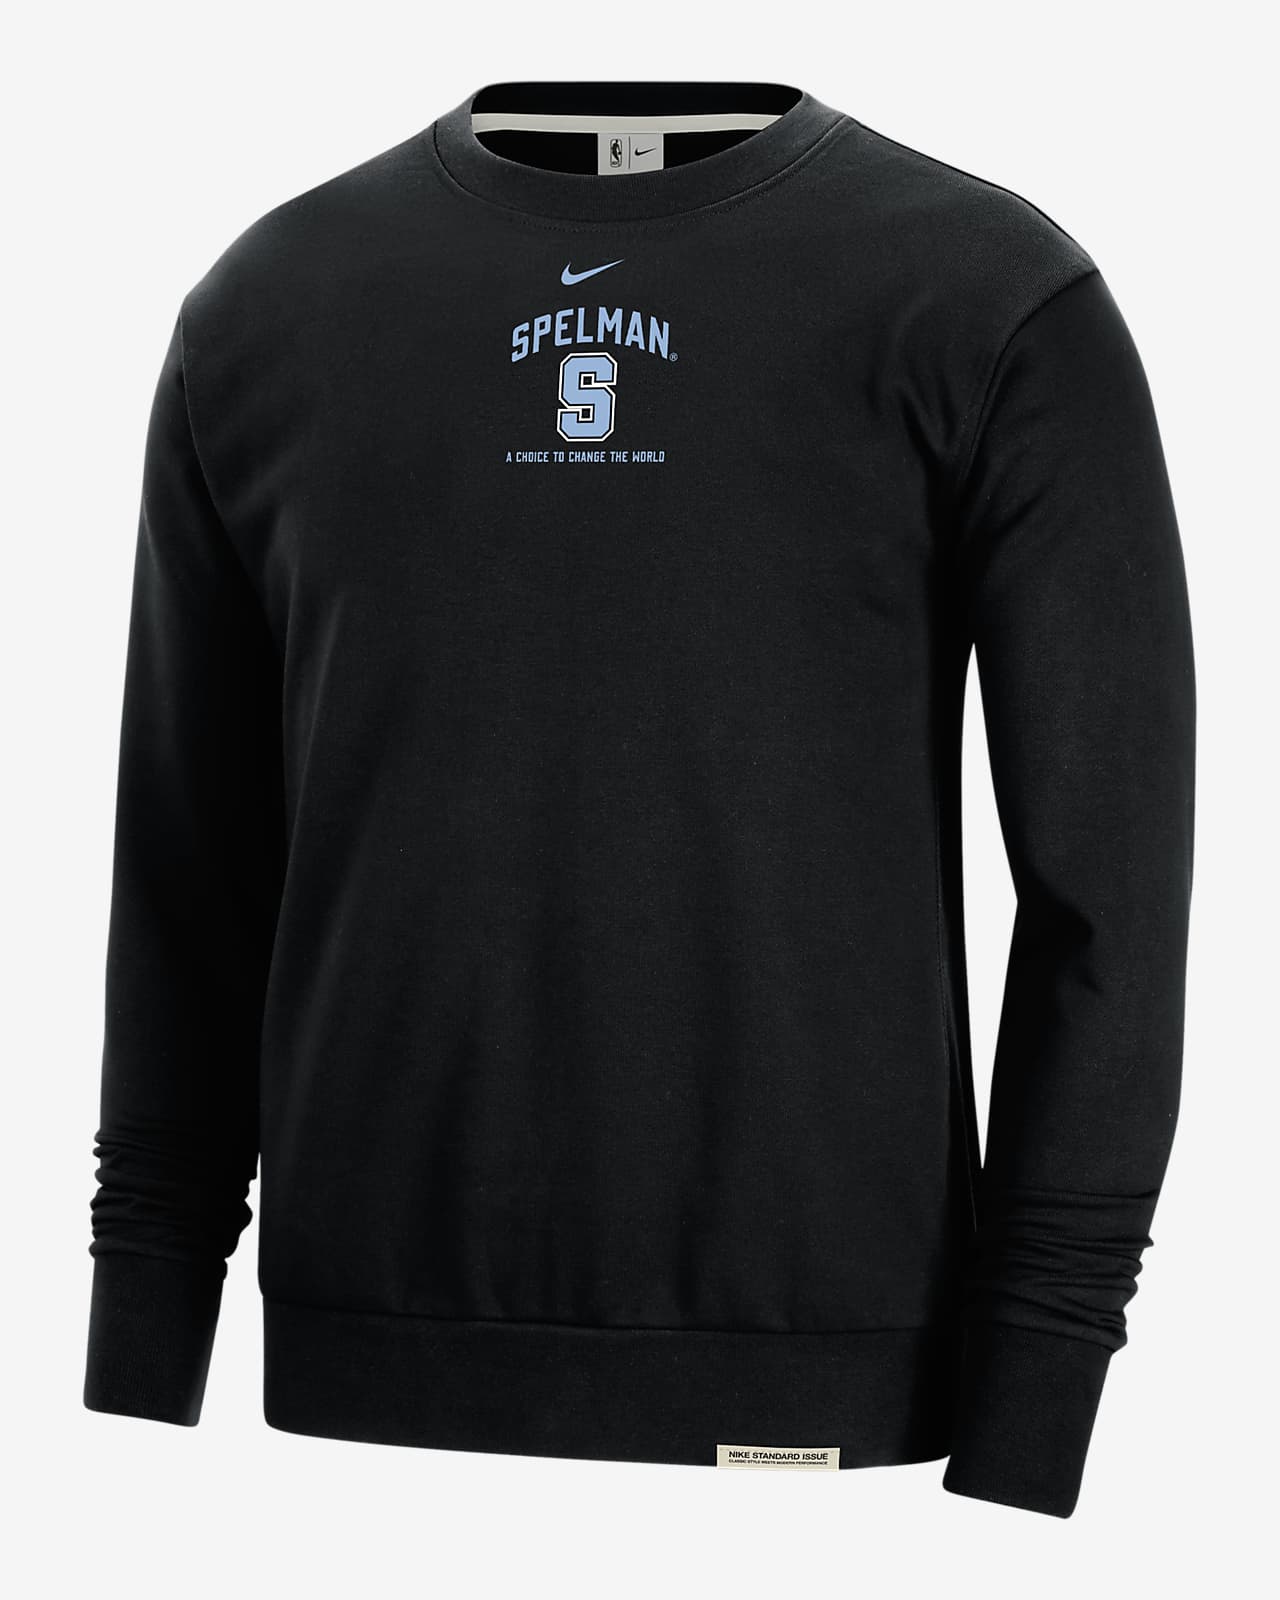 Spelman Standard Issue Men's Nike College Fleece Crew-Neck Sweatshirt